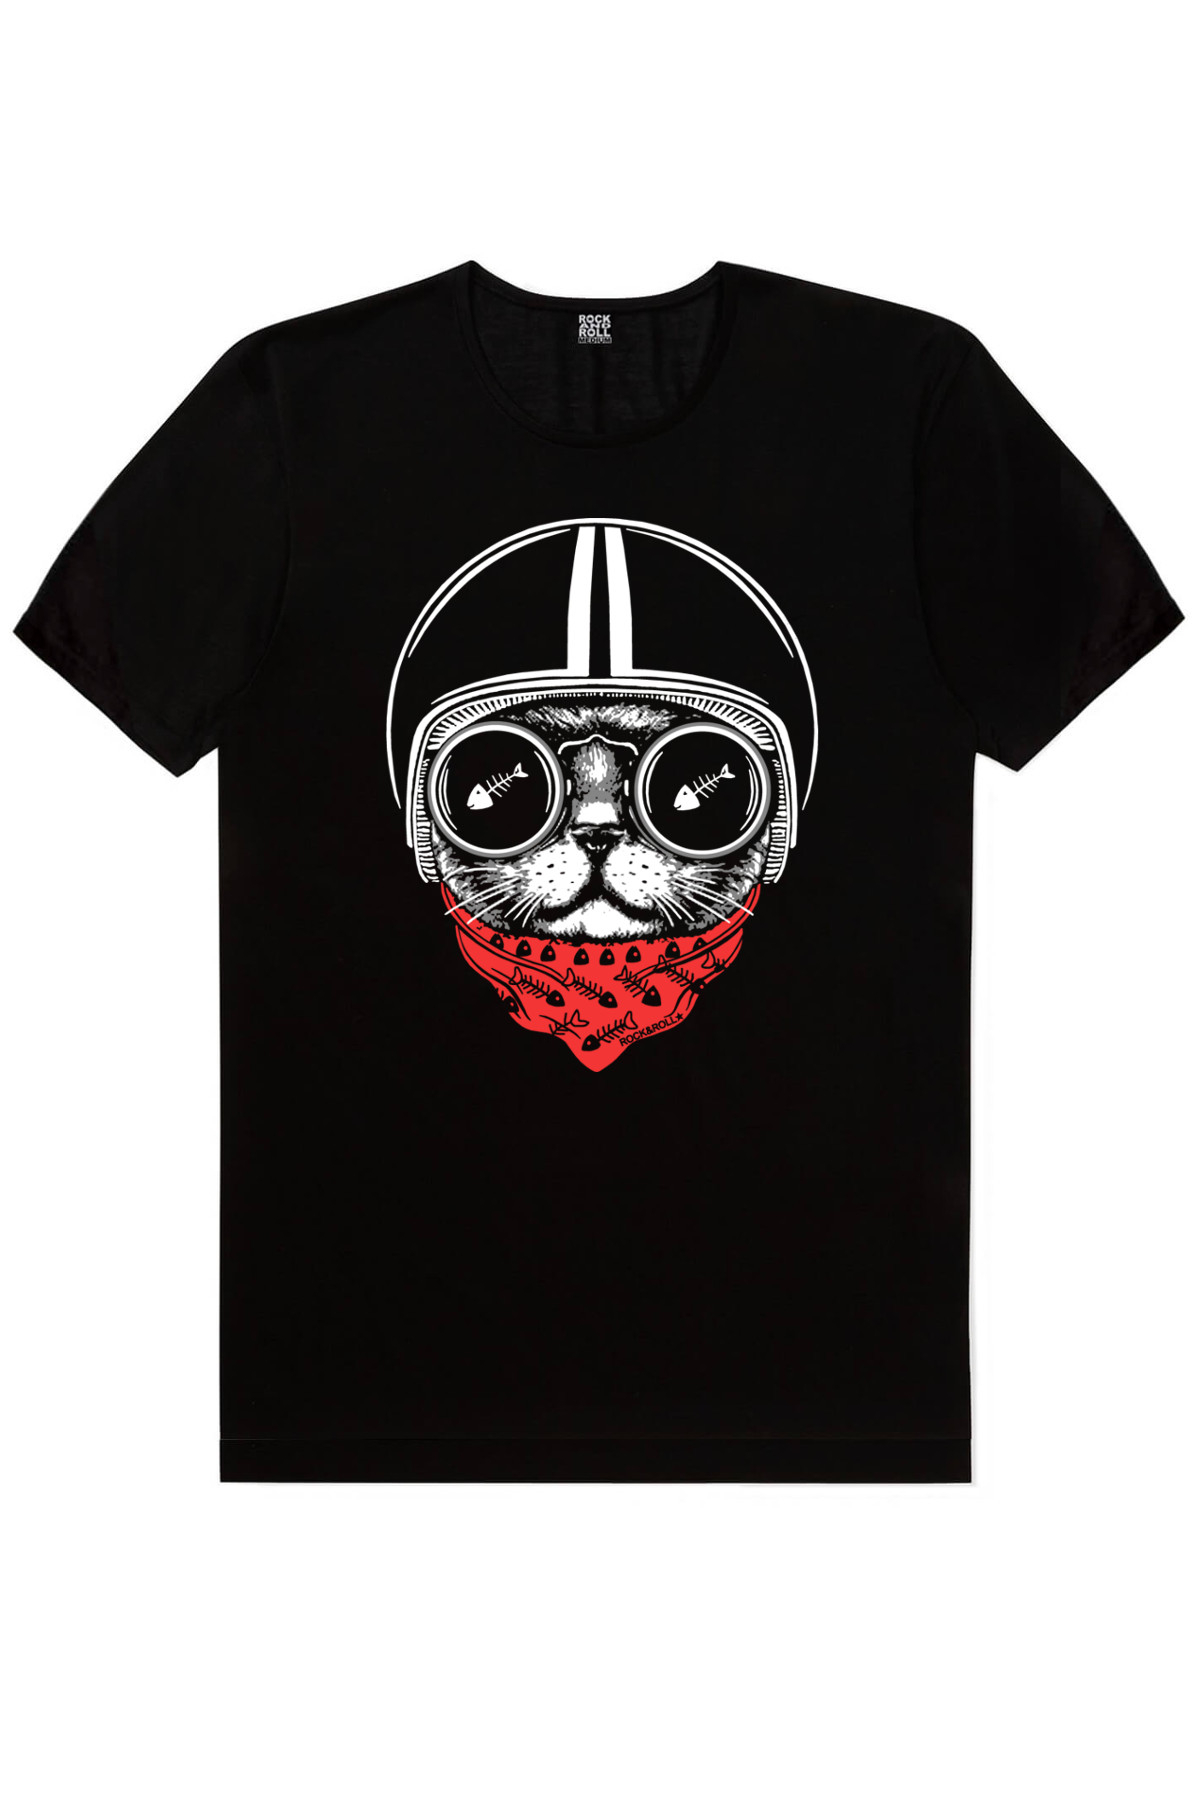 Kasklı Kedi, Panda Taklası Kadın 2'li Eko Paket T-shirt